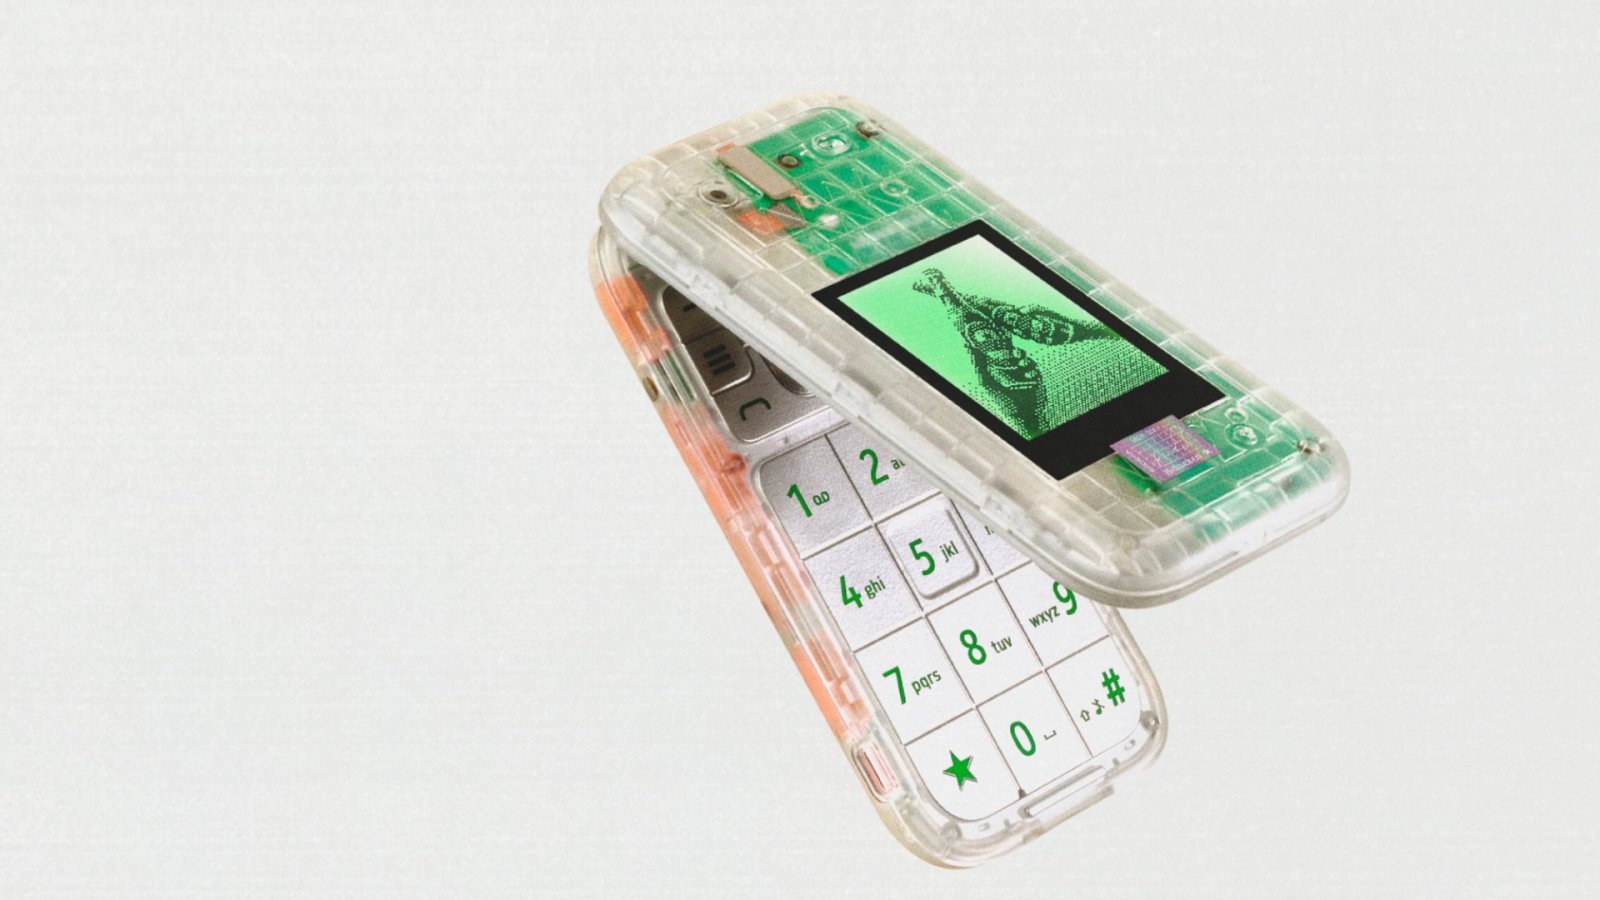 Boring Phone vuole essere lo smartphone per 'riconnettersi' alla realtà